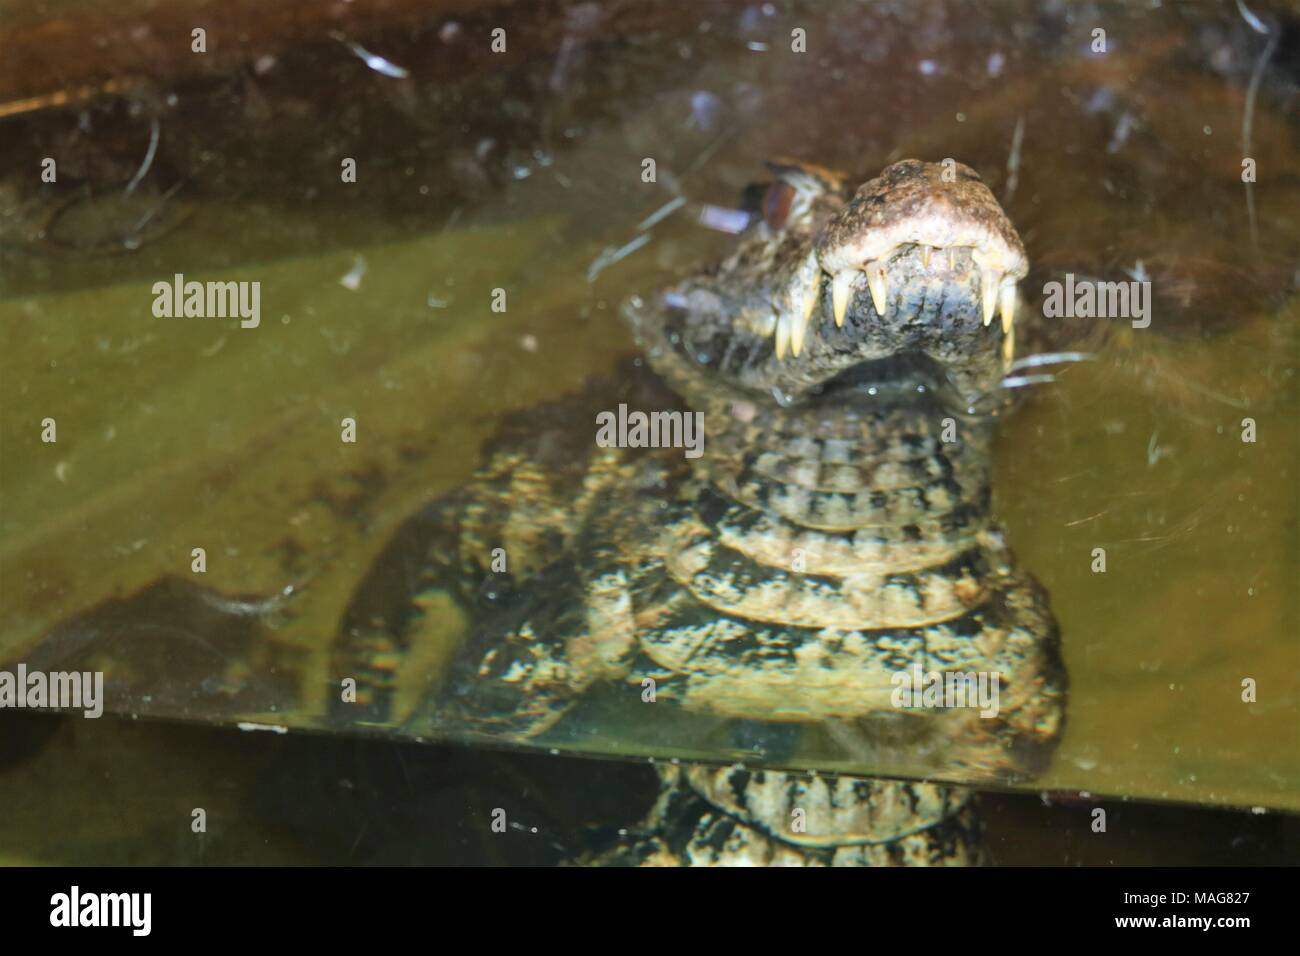 Liscia caimano fronteggiata semi sommerso in acqua a una attrazione turistica Foto Stock